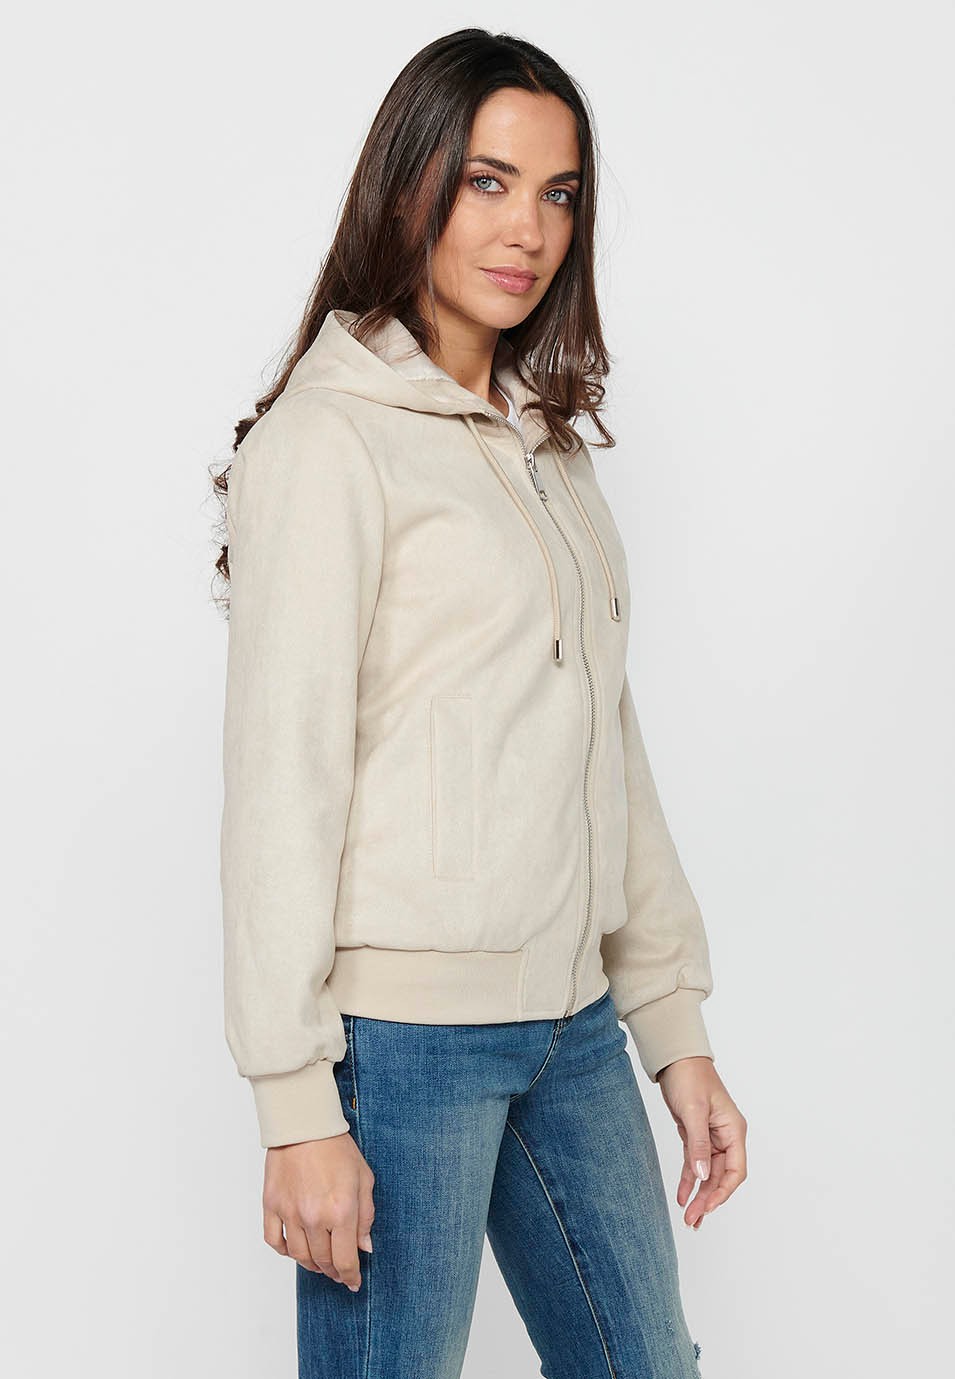 Women's Ecru Color Hooded Collar Long Sleeve Zip Front Closure Sweatshirt Jacket 1